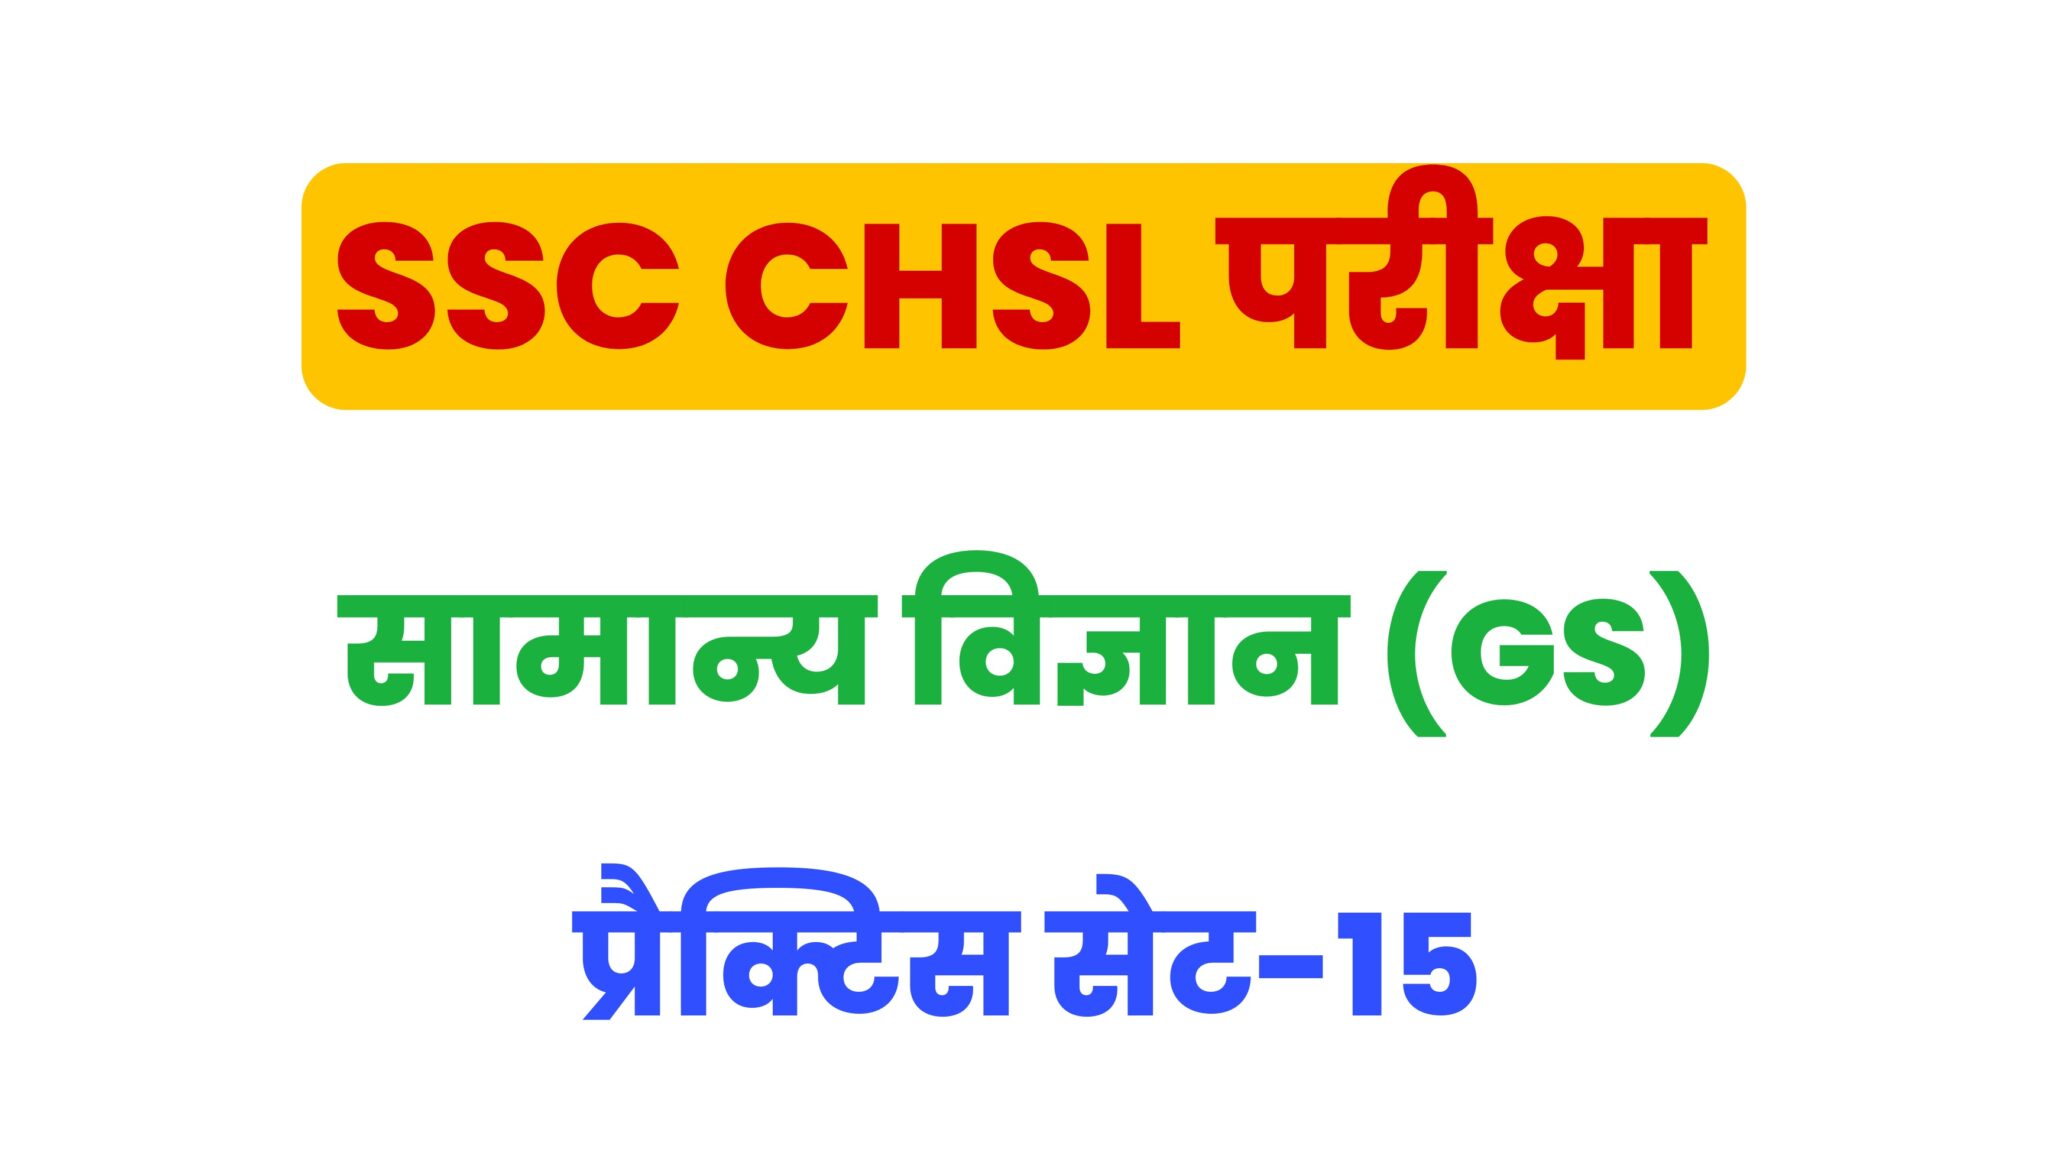 SSC CHSL General Science  प्रैक्टिस सेट 15 : सामान्य विज्ञान के 25 महत्वपूर्ण प्रश्न